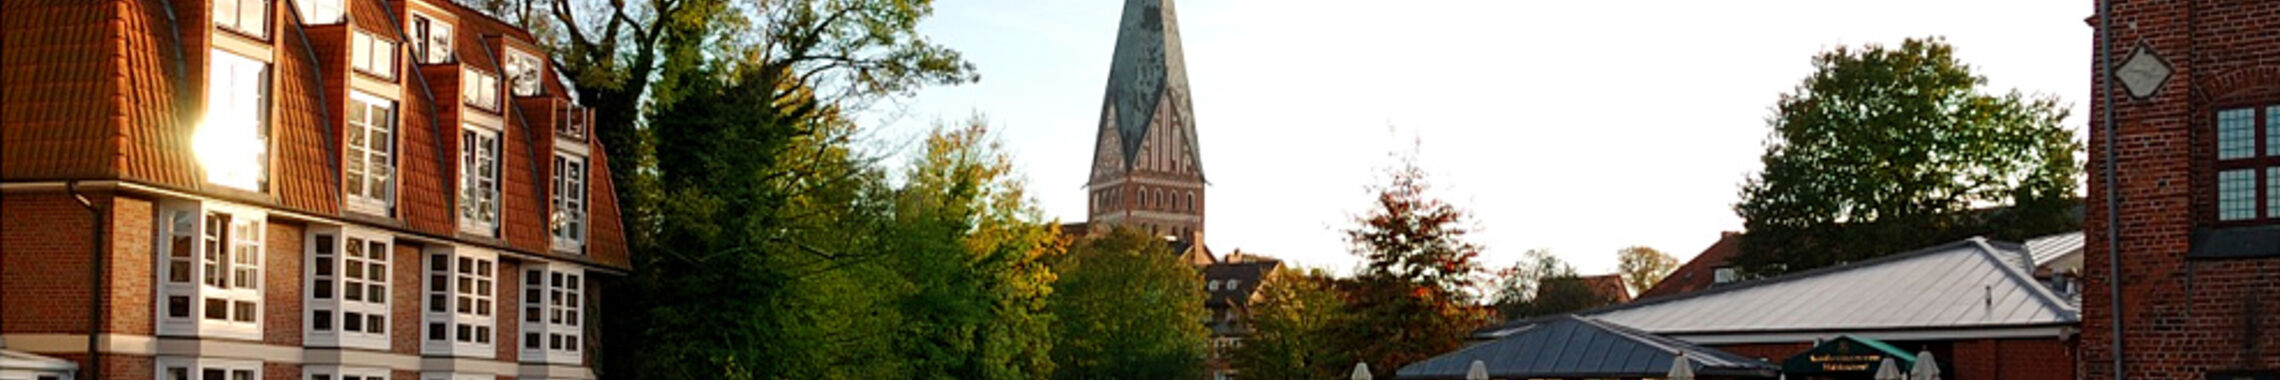 Kopfgrafik Lüneburg